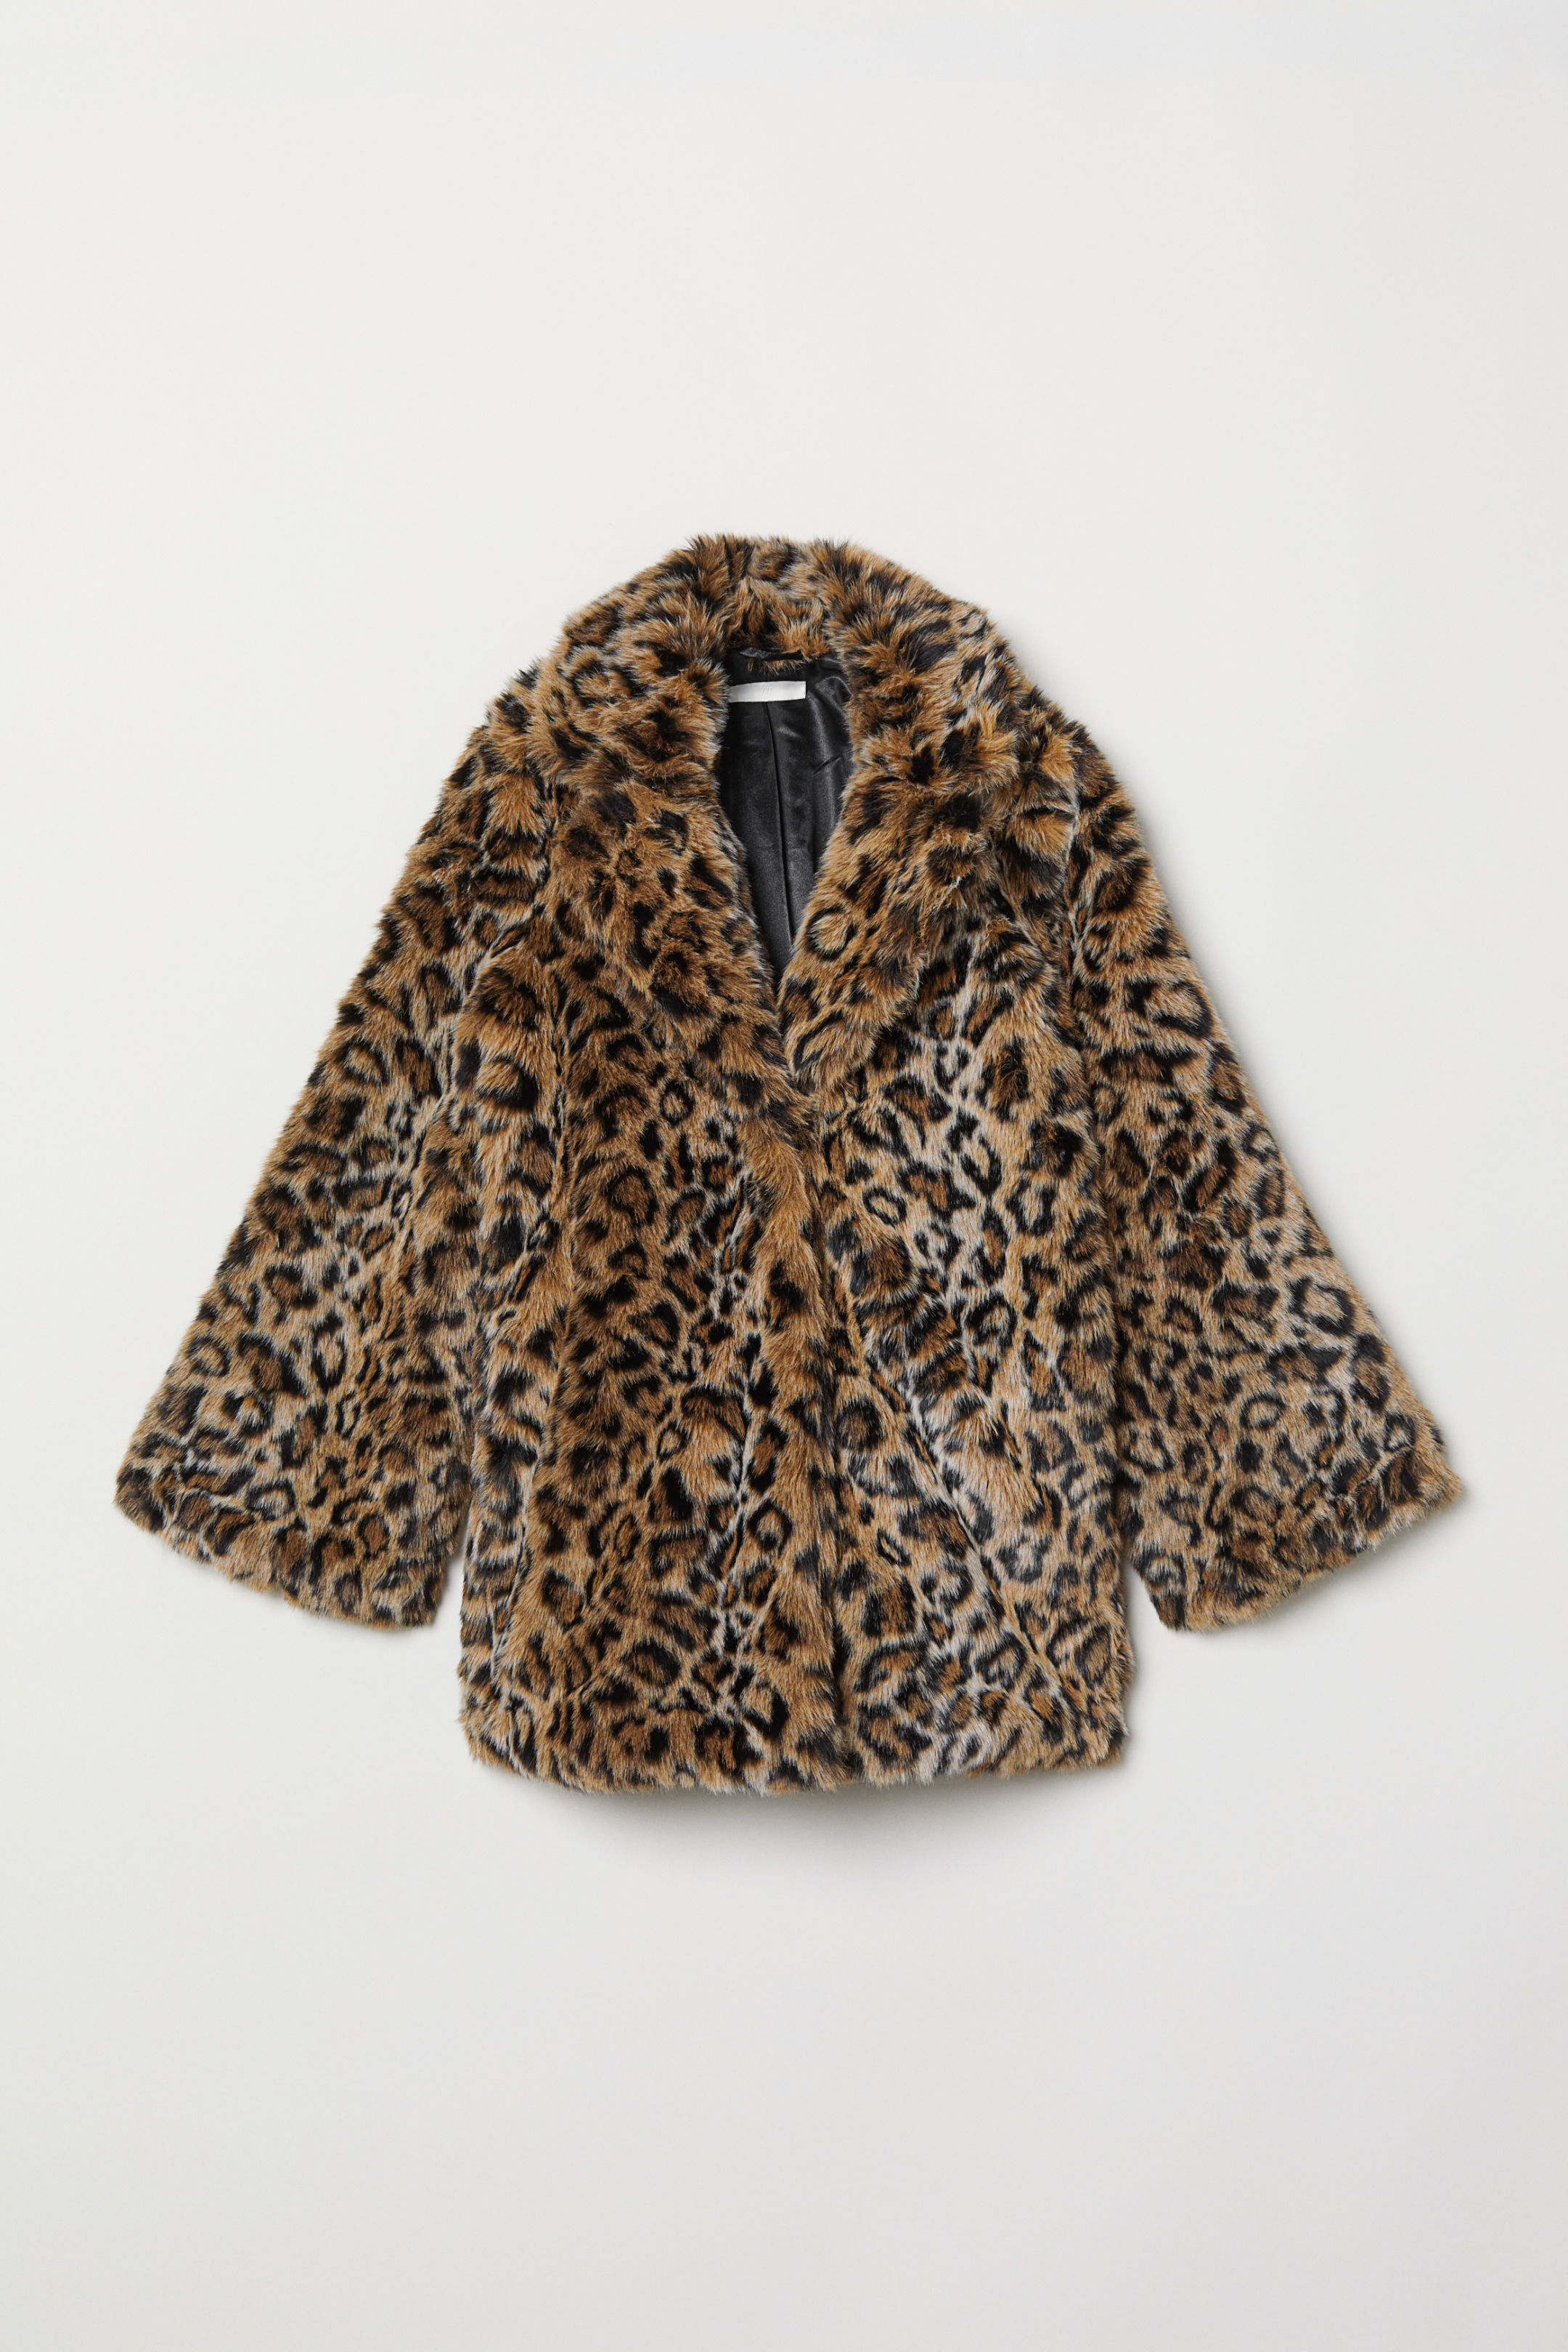 H&M Leopard Print Faux Fur Coat